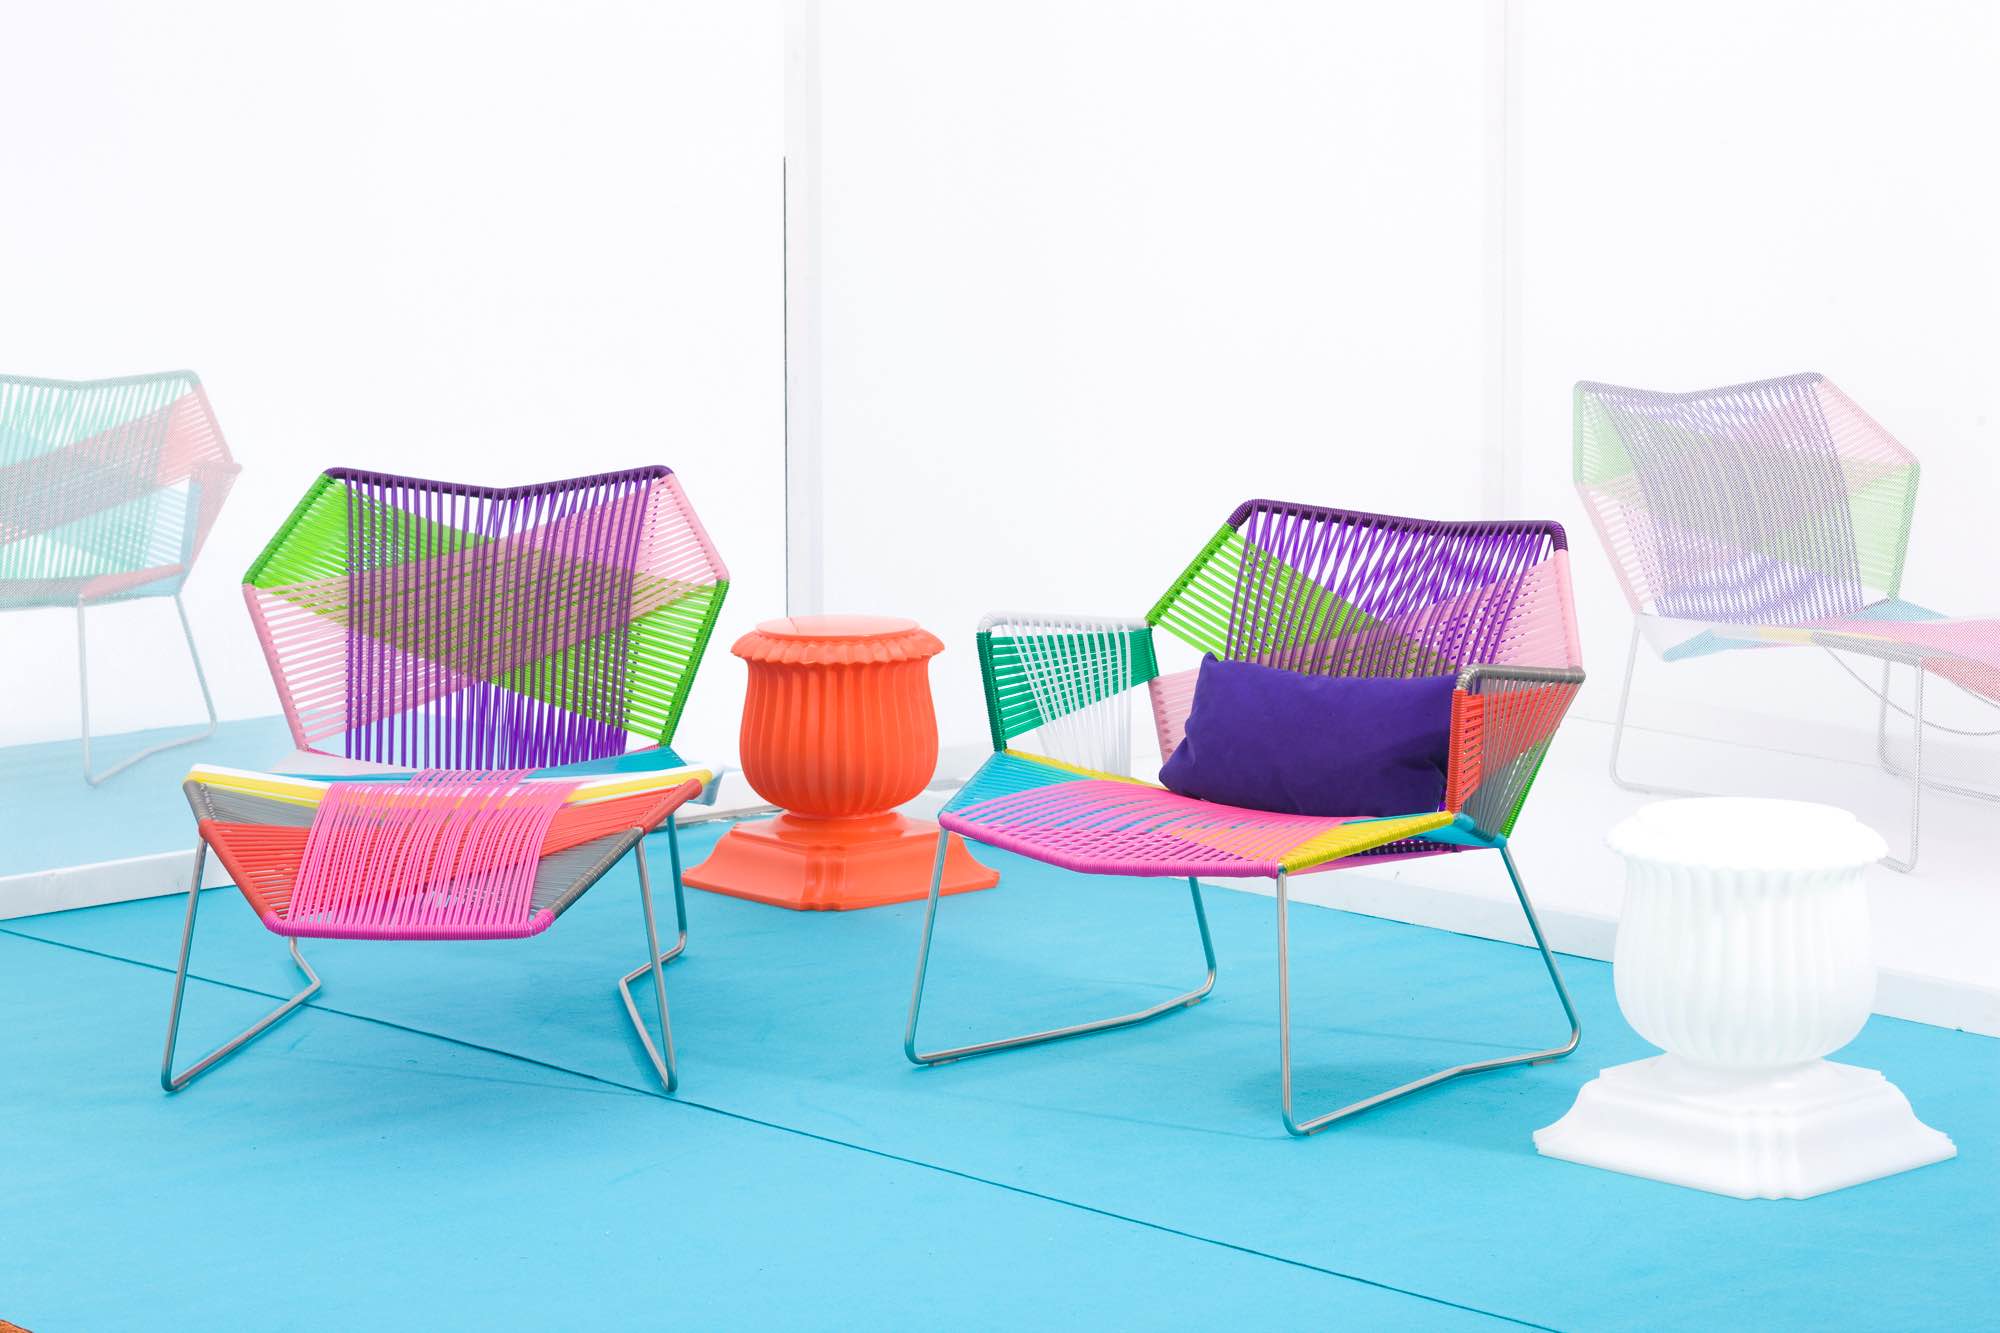 熱塑性聚合繩編織而成的 Tropicalia 單椅，是 Patricia Urquiola 最知名的戶外家具代表作。